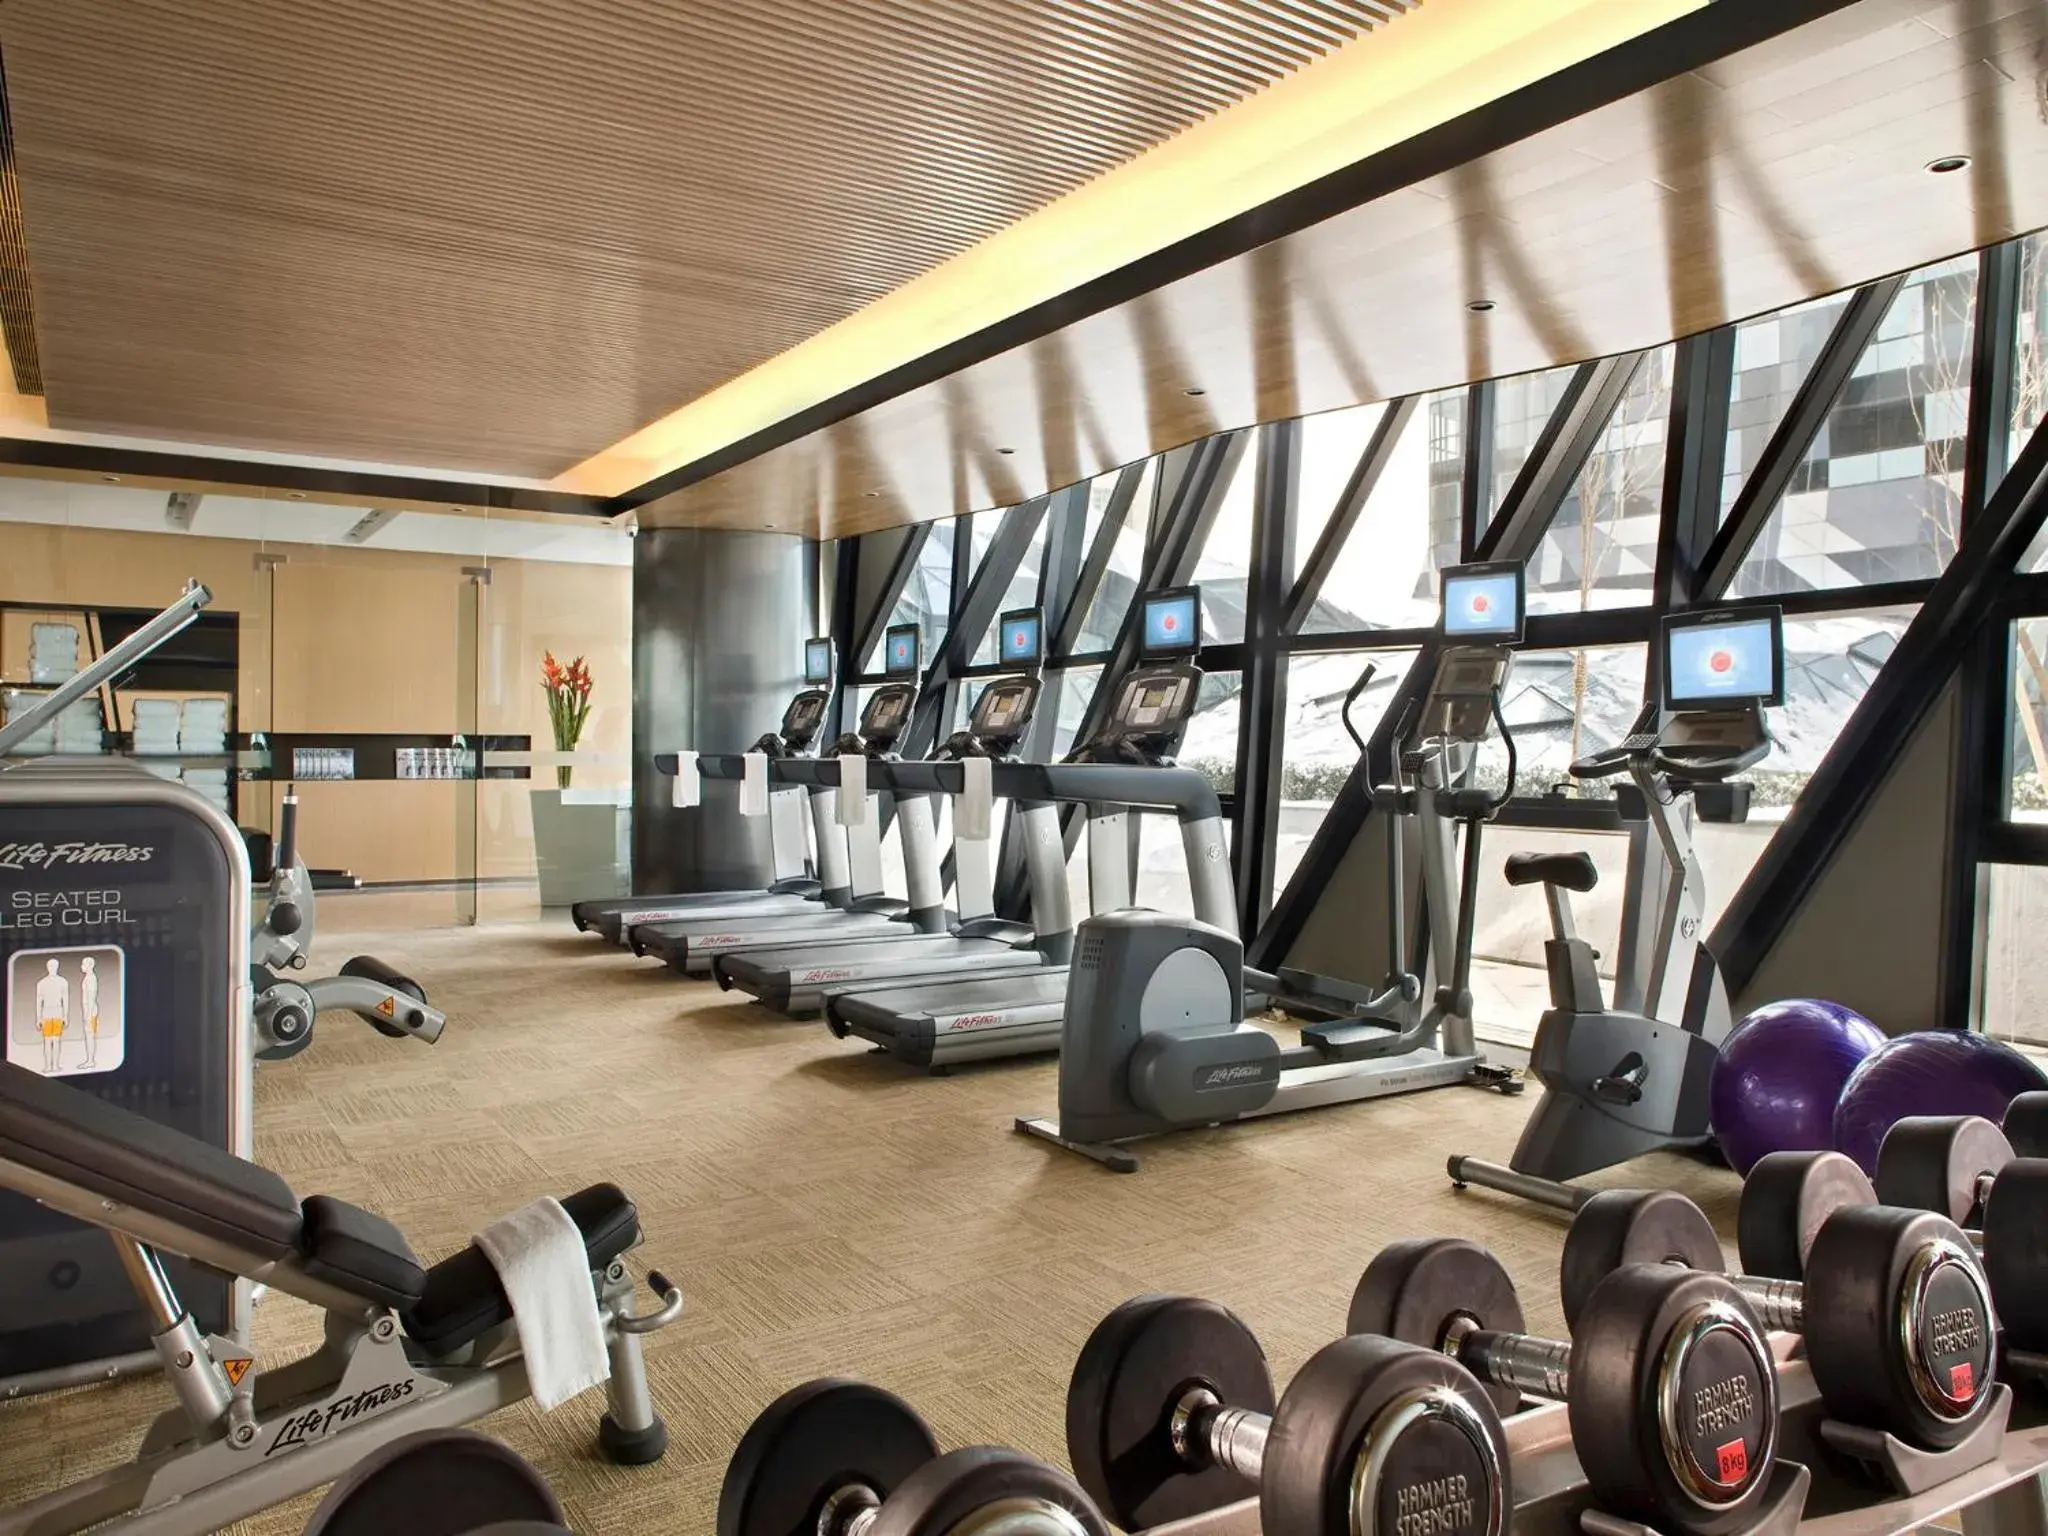 Fitness centre/facilities, Fitness Center/Facilities in Ascott Raffles City Beijing